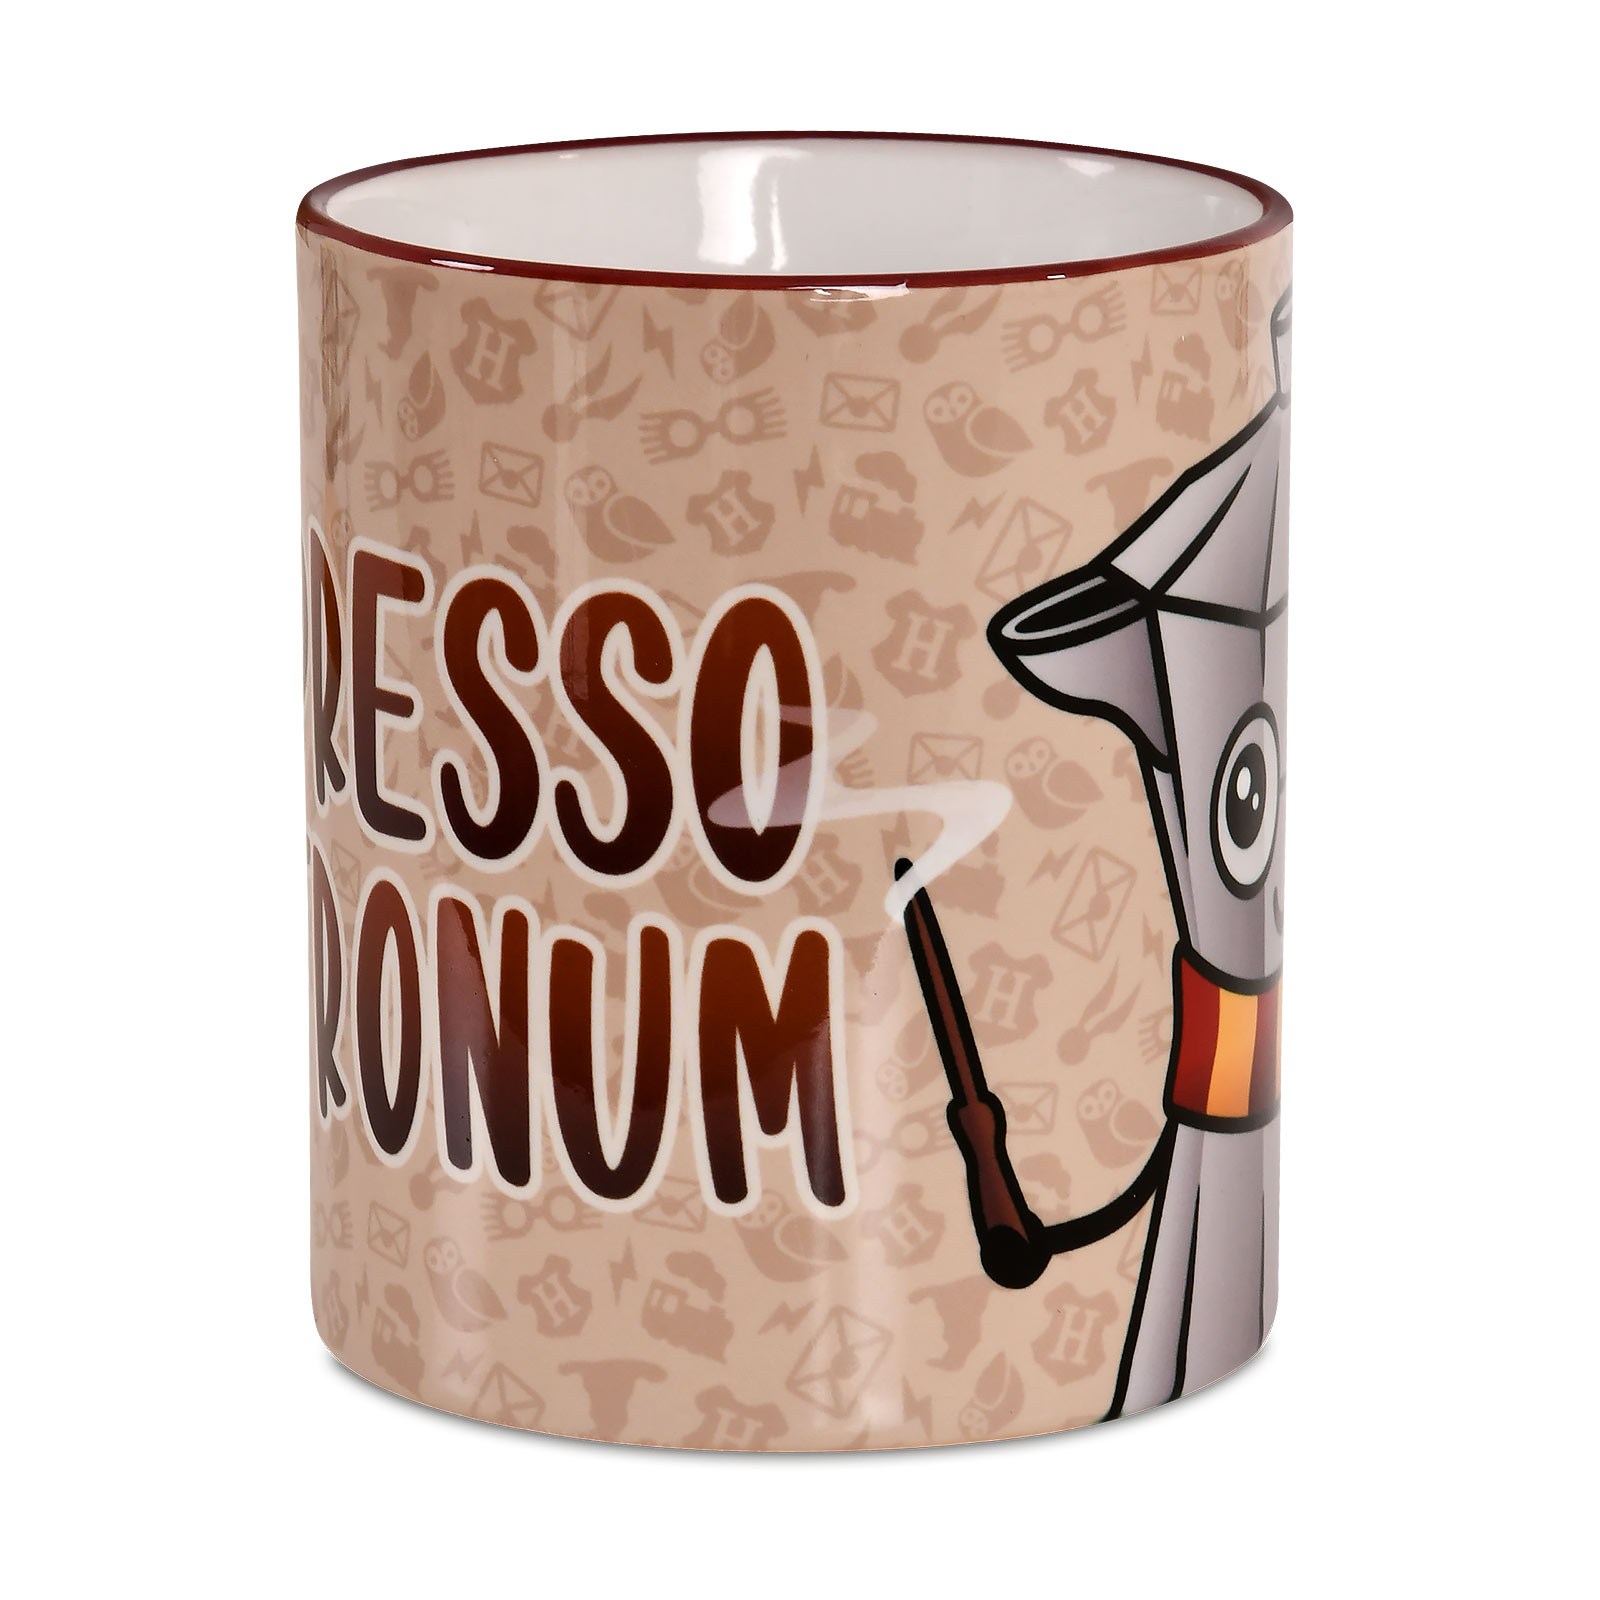 Espresso Patronum Cup for Harry Potter Fans